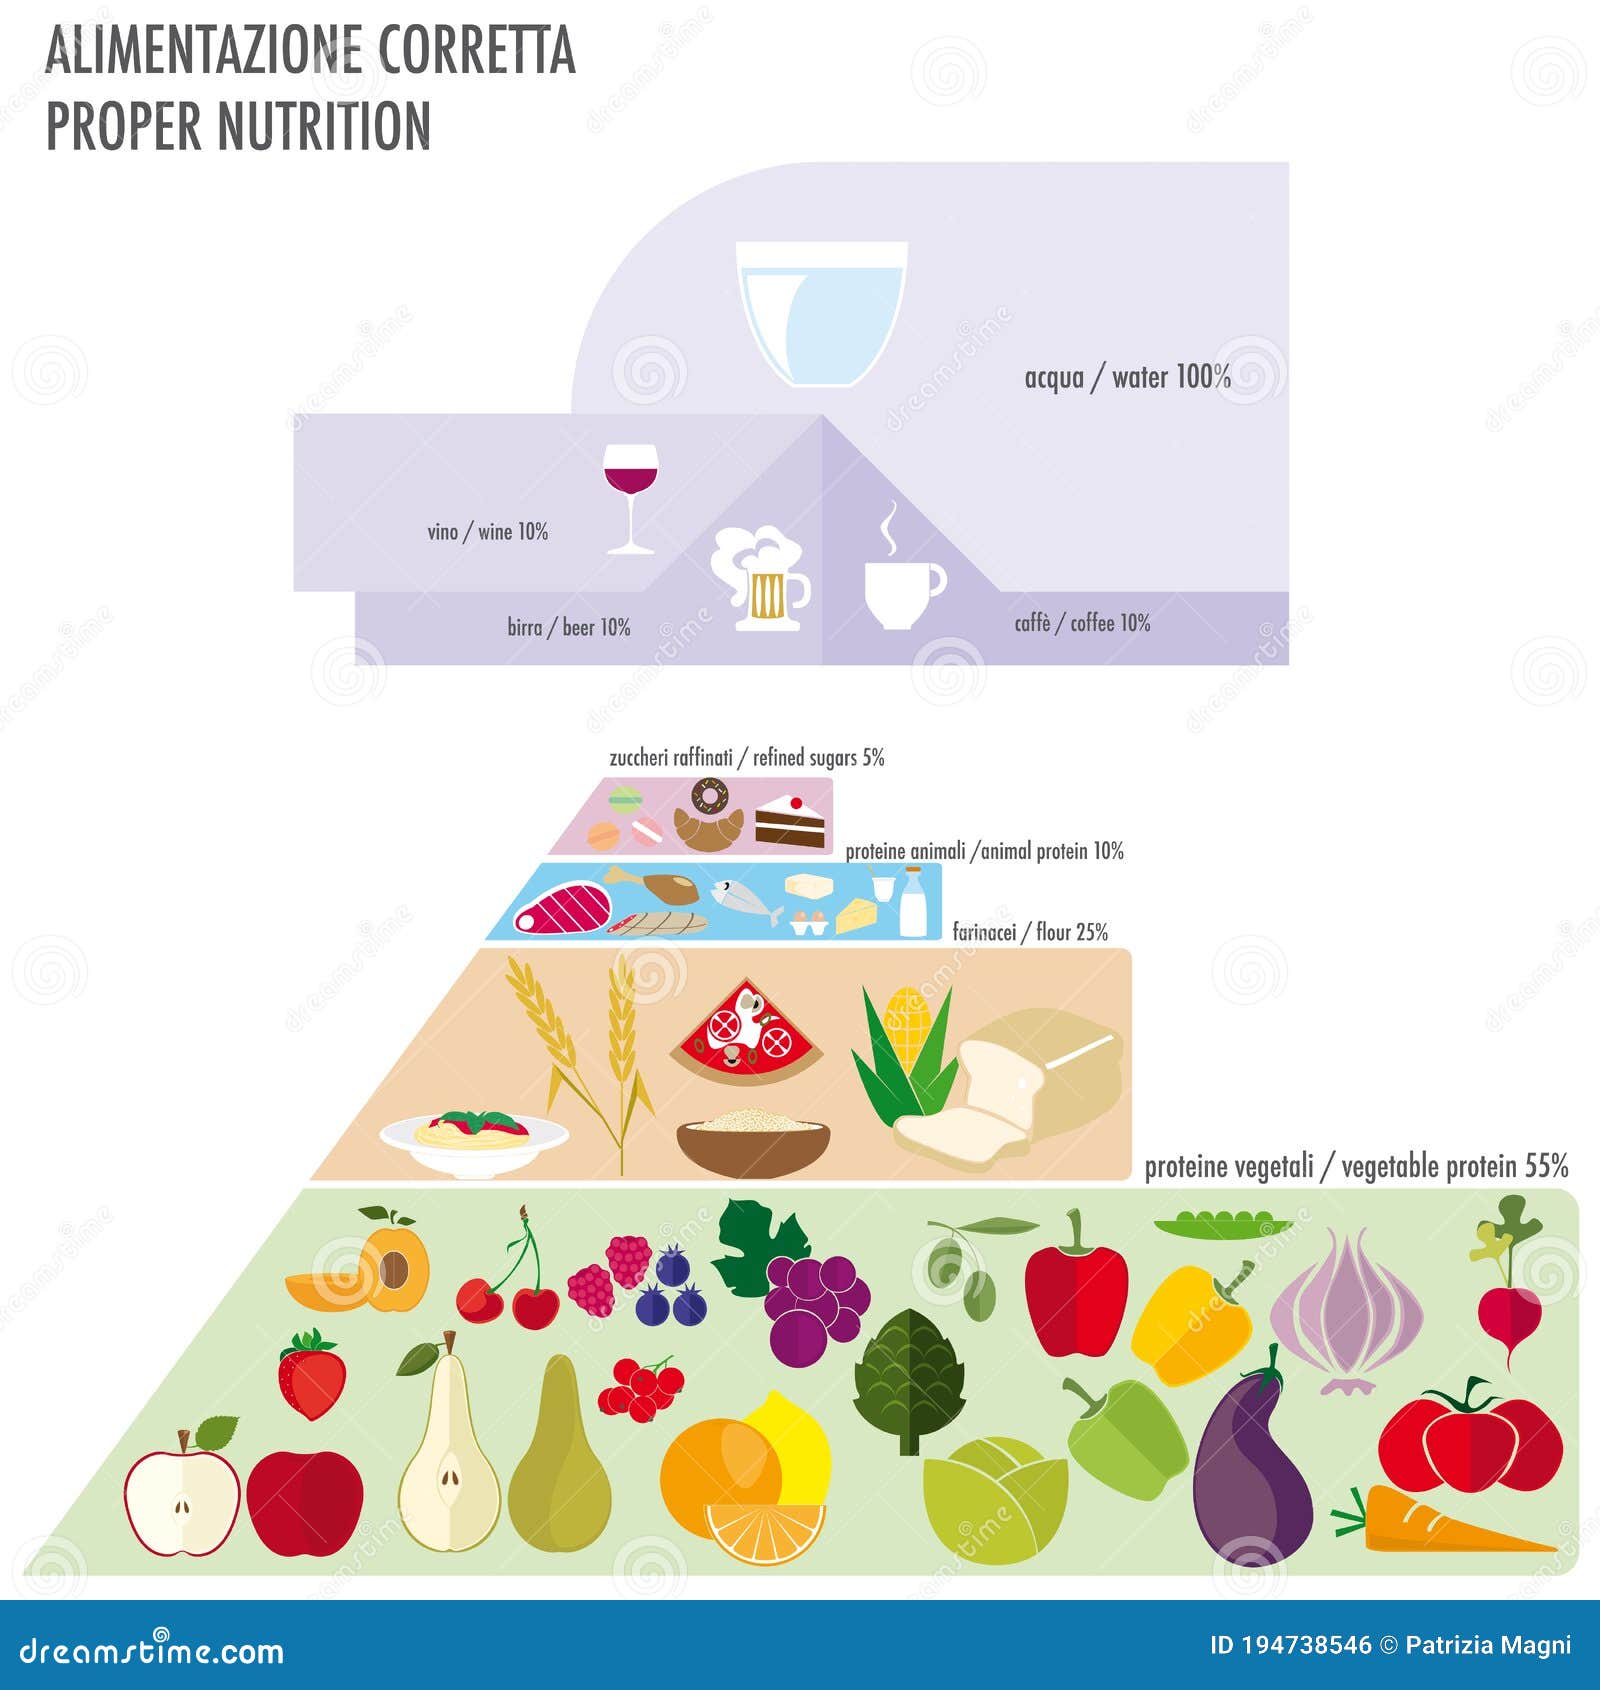 food pyramid divided into 5 parts